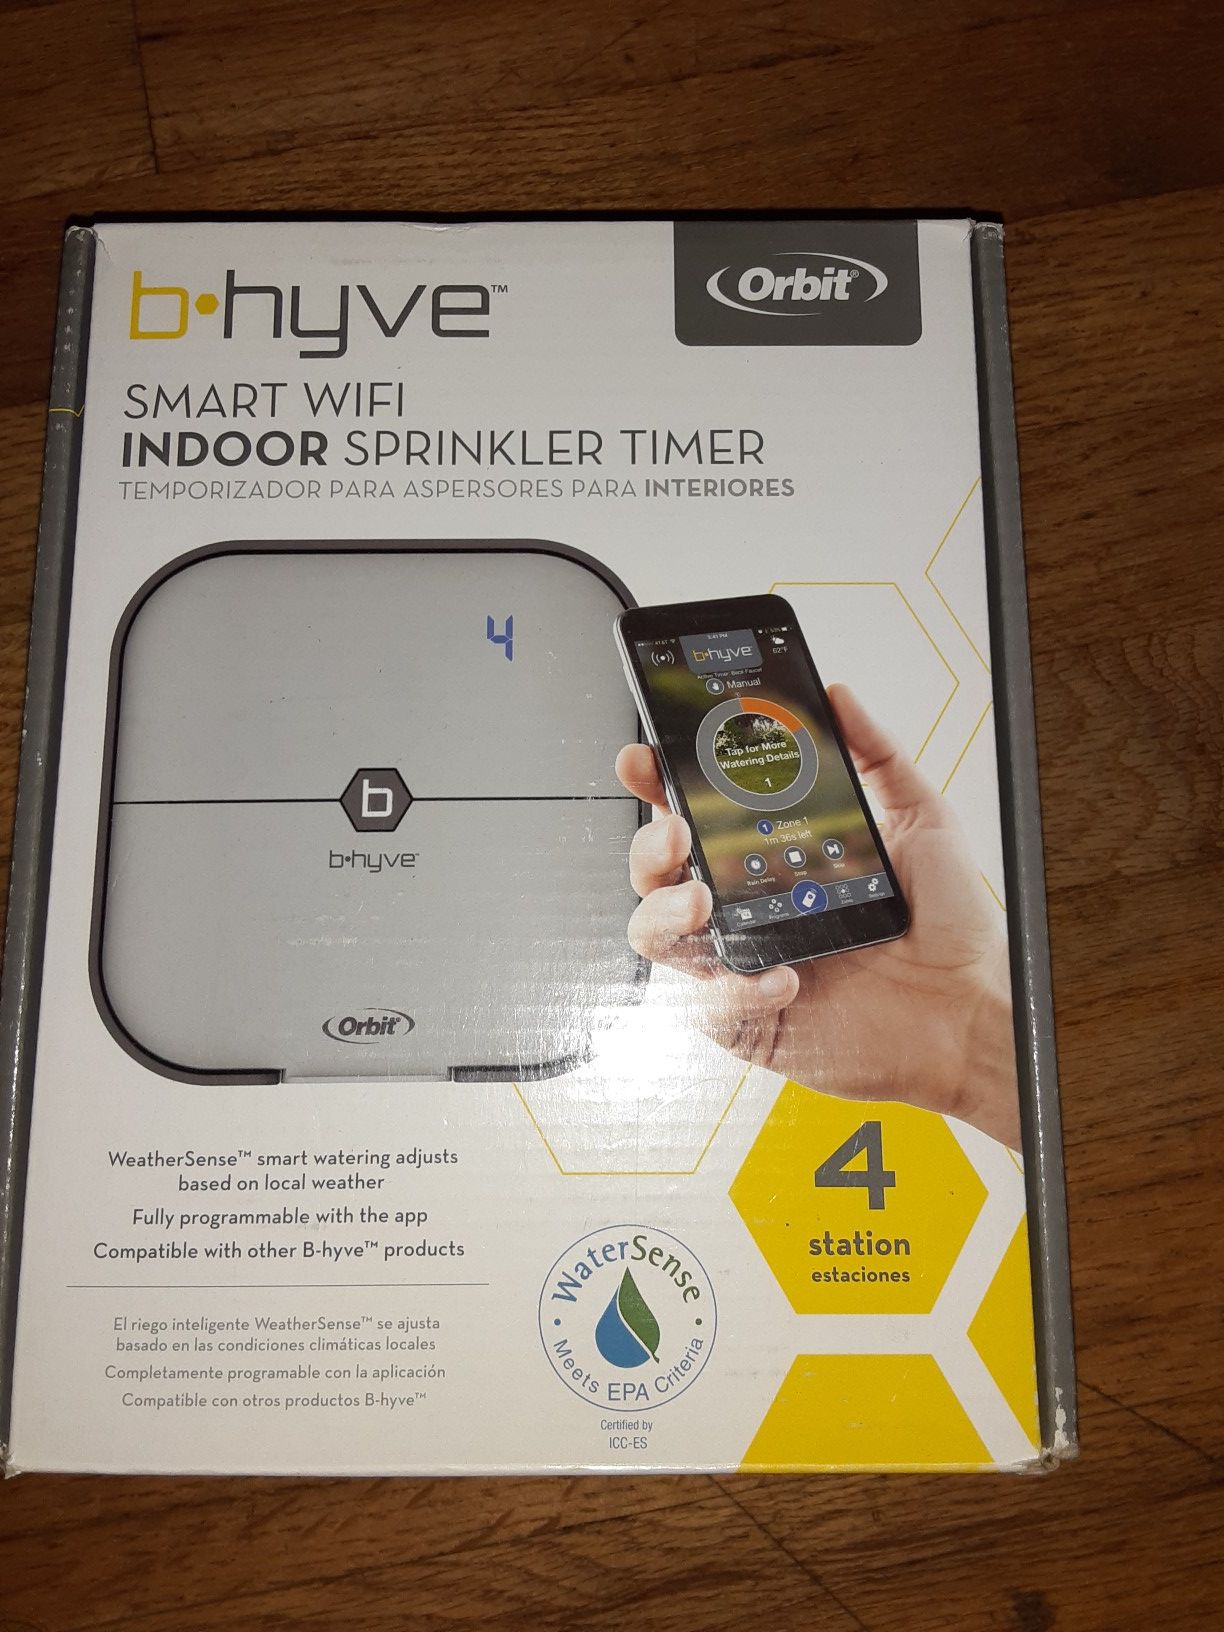 Orbit B-hyve wifi sprinkler